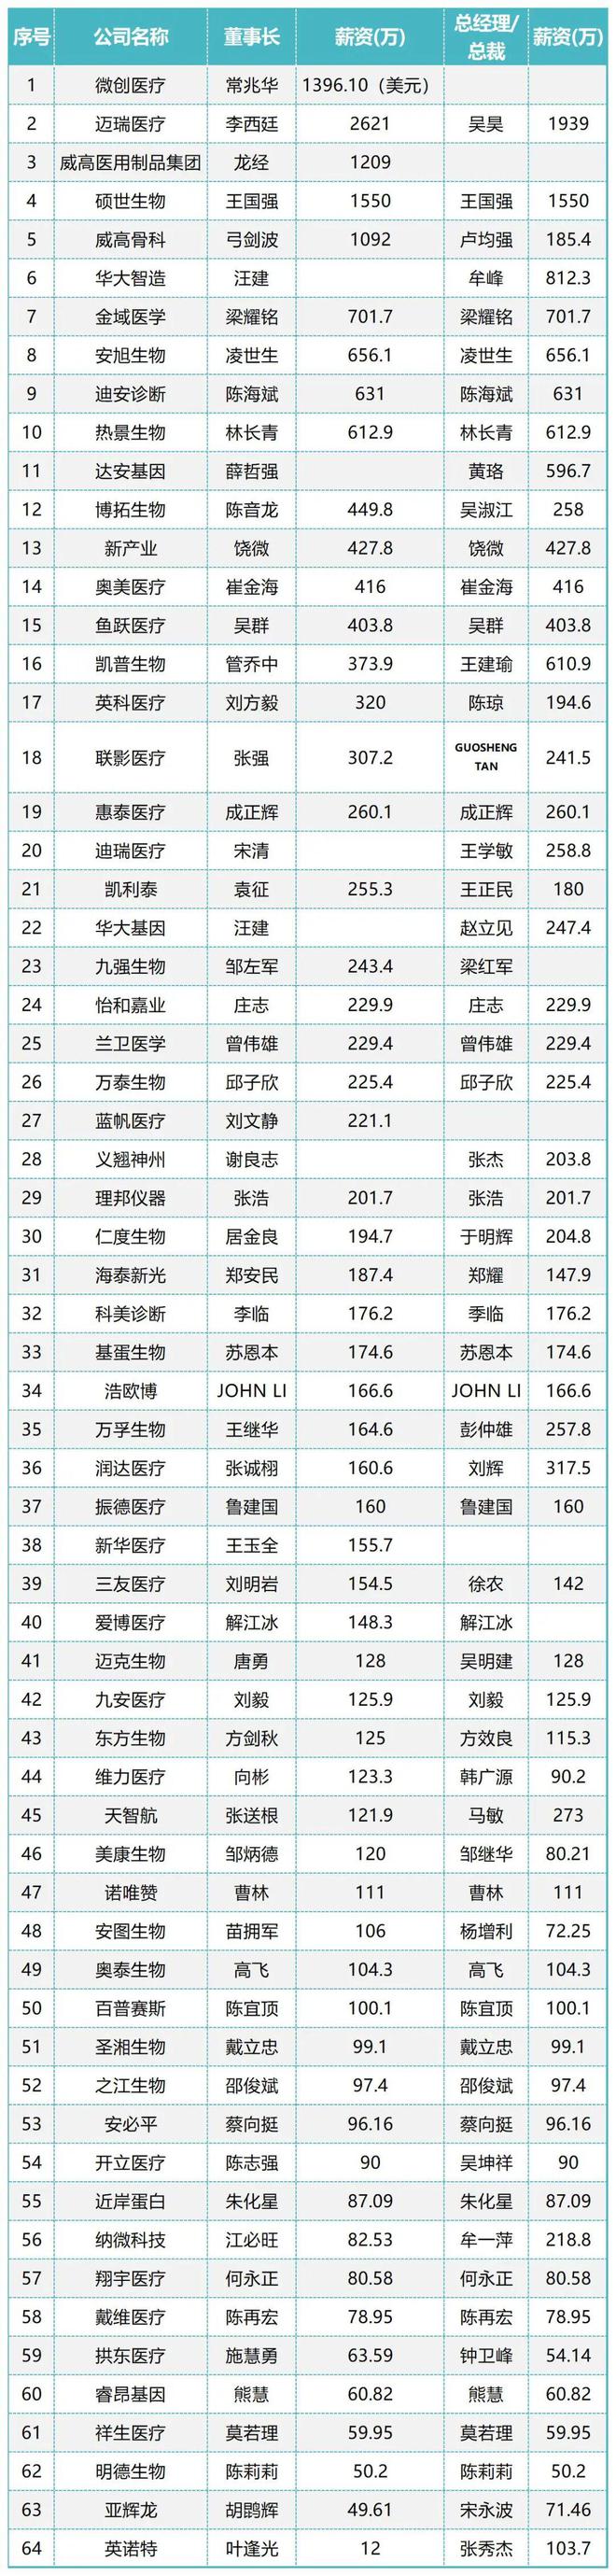 中国医疗器械CEO薪酬排行榜(图1)